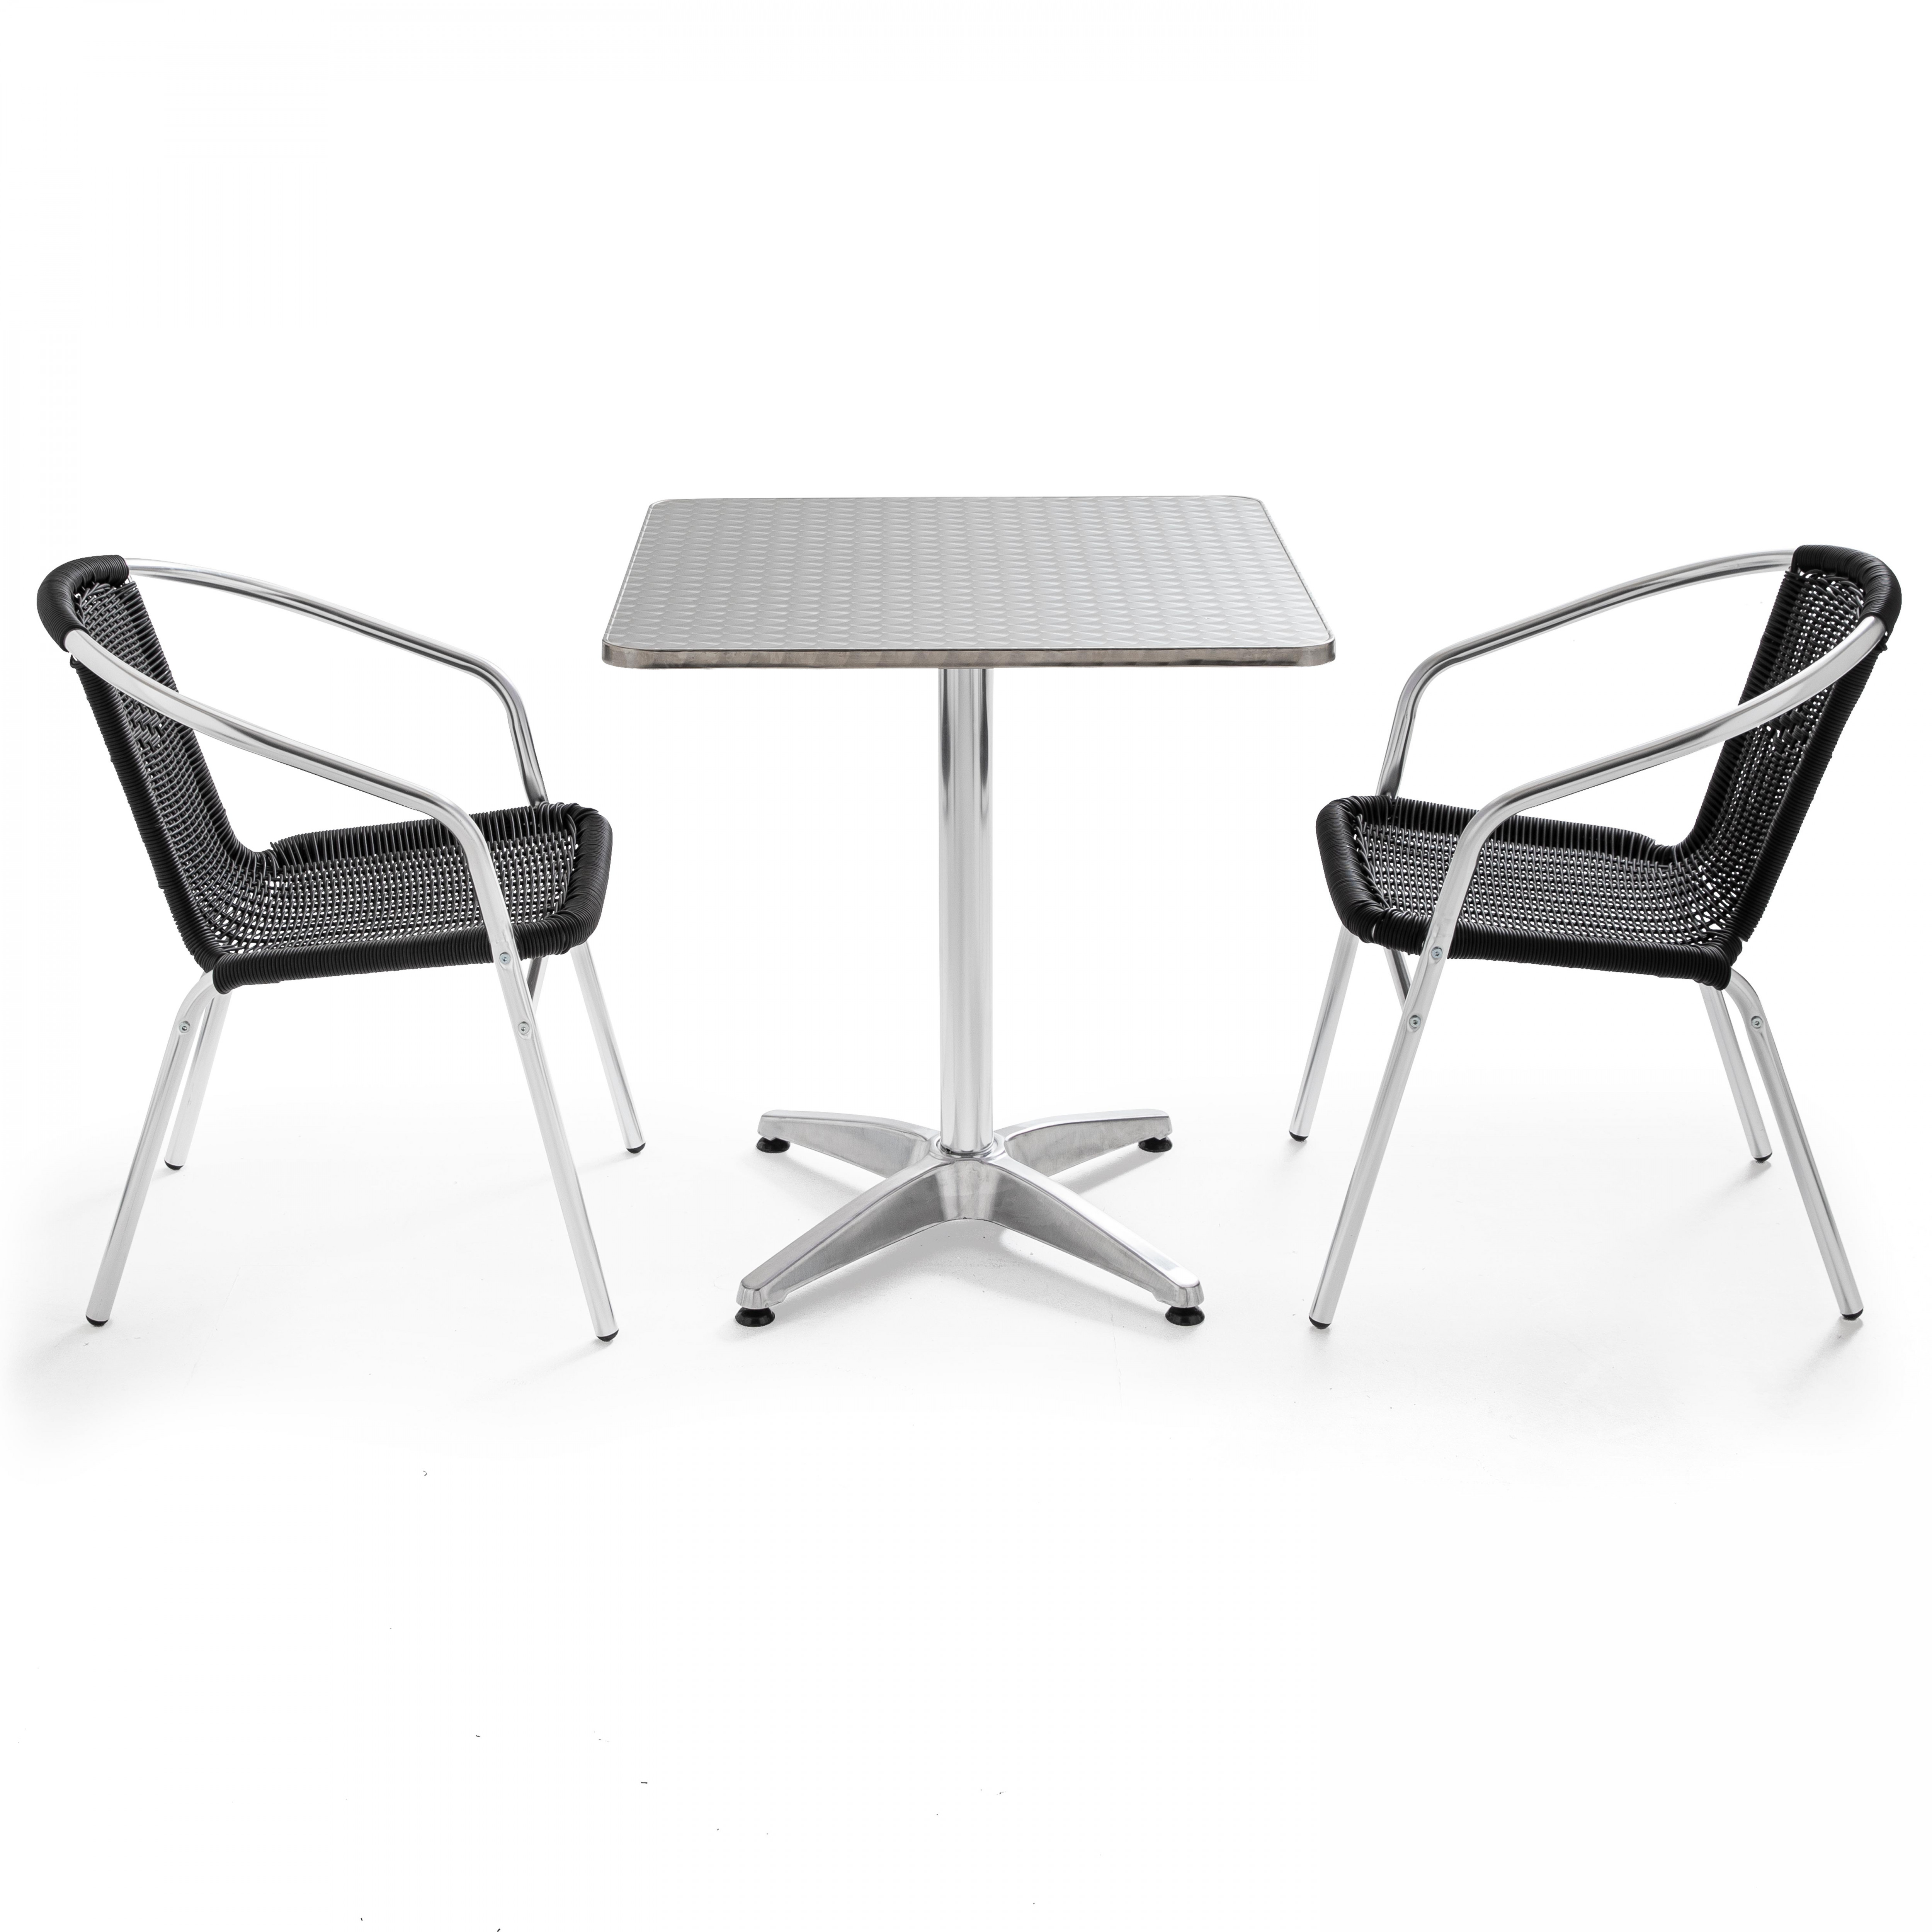 Table de jardin carrée et 2 chaises avec accoudoirs empilables en aluminium et résine tressée